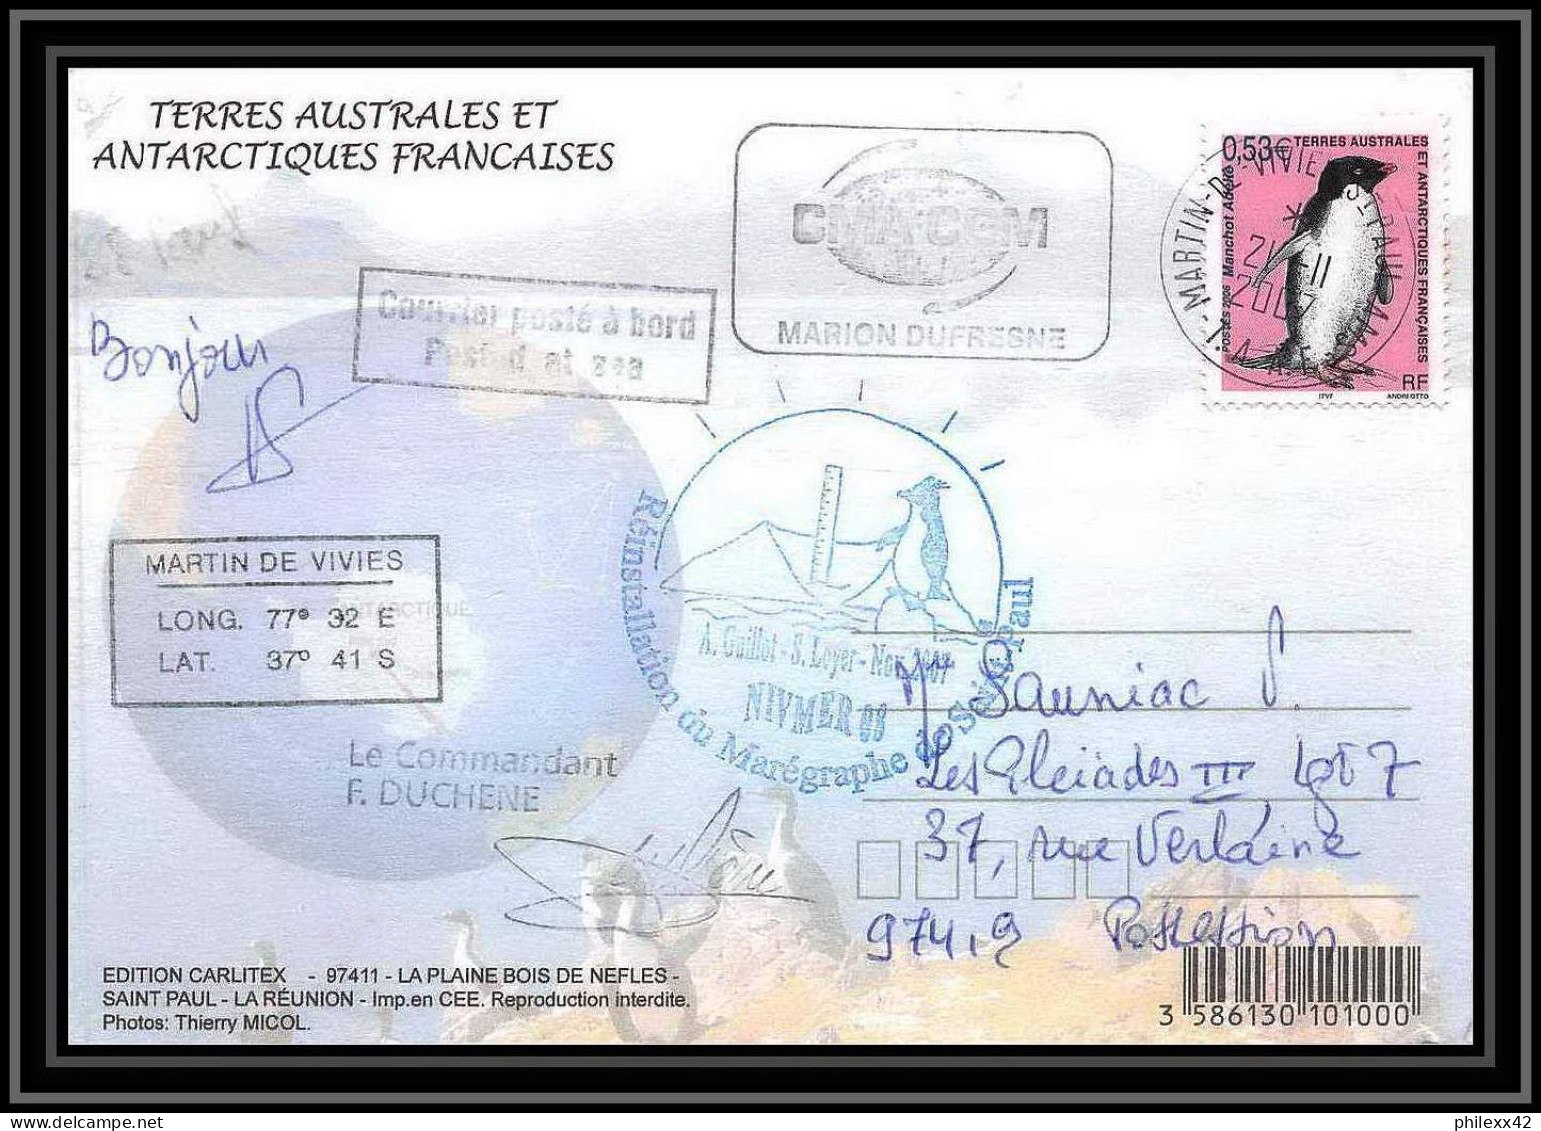 2750 ANTARCTIC Terres Australes (taaf)-carte Postale Dufresne 2 Signé Signed Op 2007/3 N°448 ST PAUL 21/11/2007 - Storia Postale